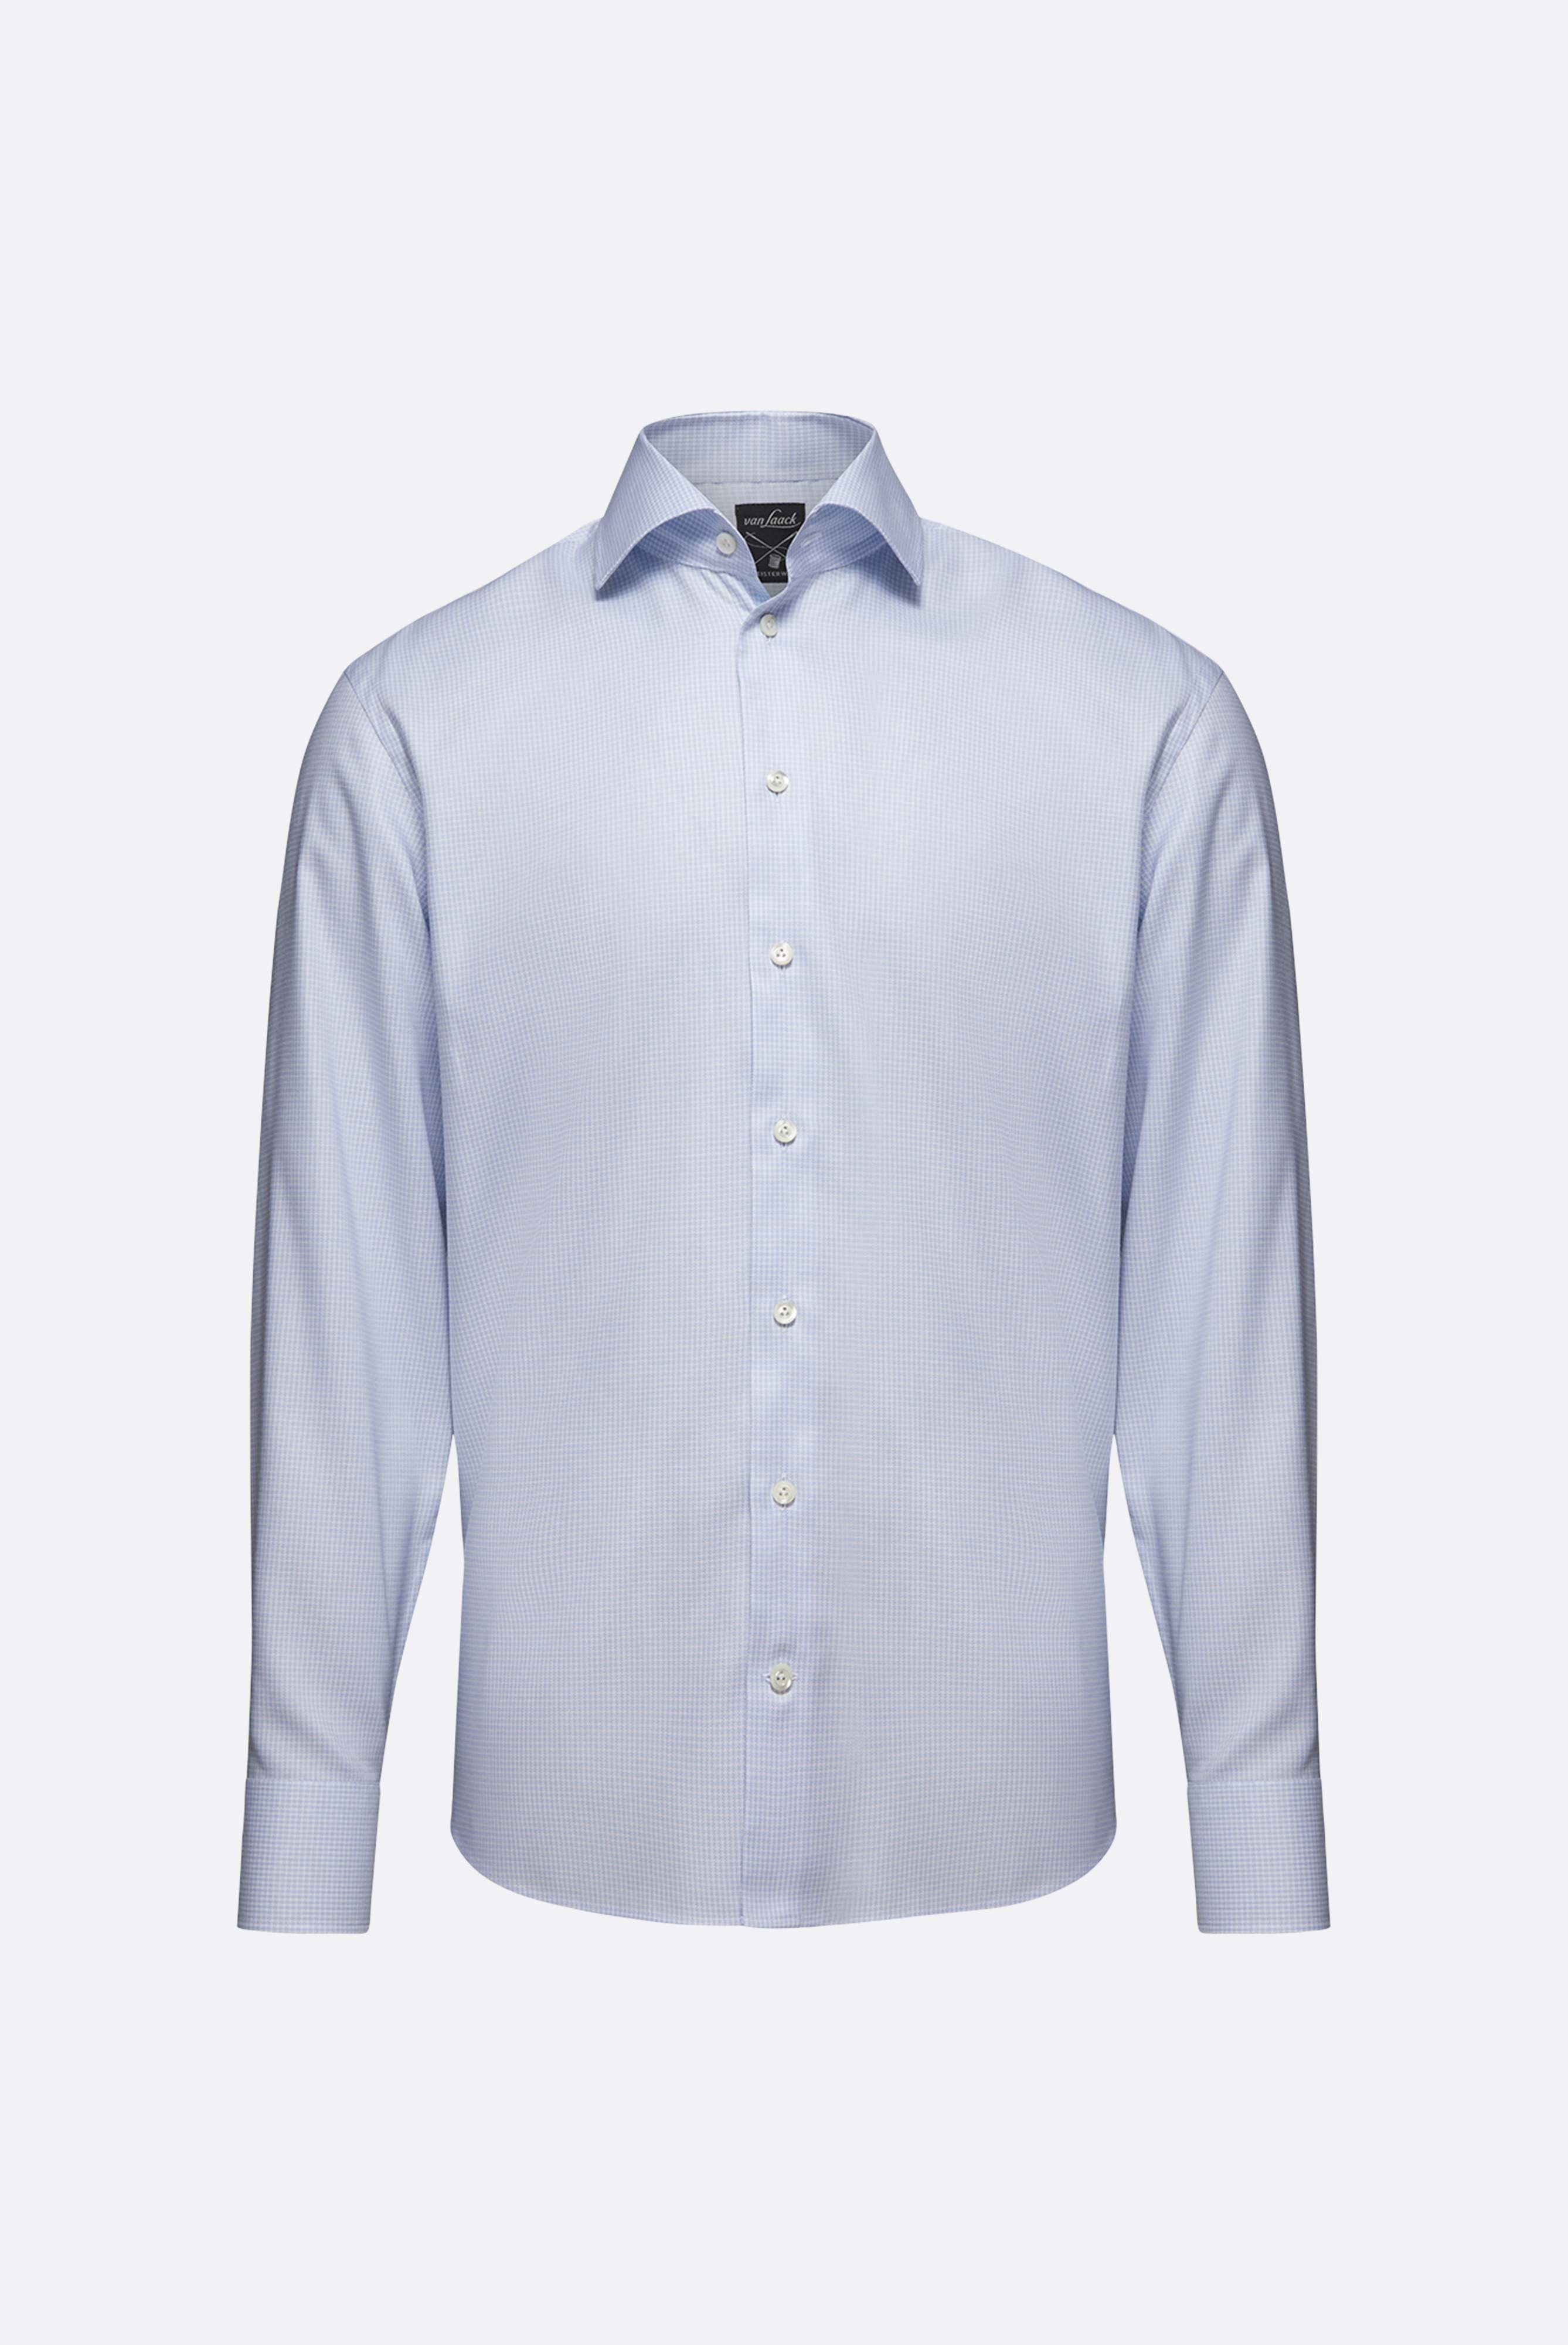 Bügelleichte Hemden+Bügelfreies Hemd mit Hahnentrittmuster Comfort Fit+20.2021.BQ.161101.720.39